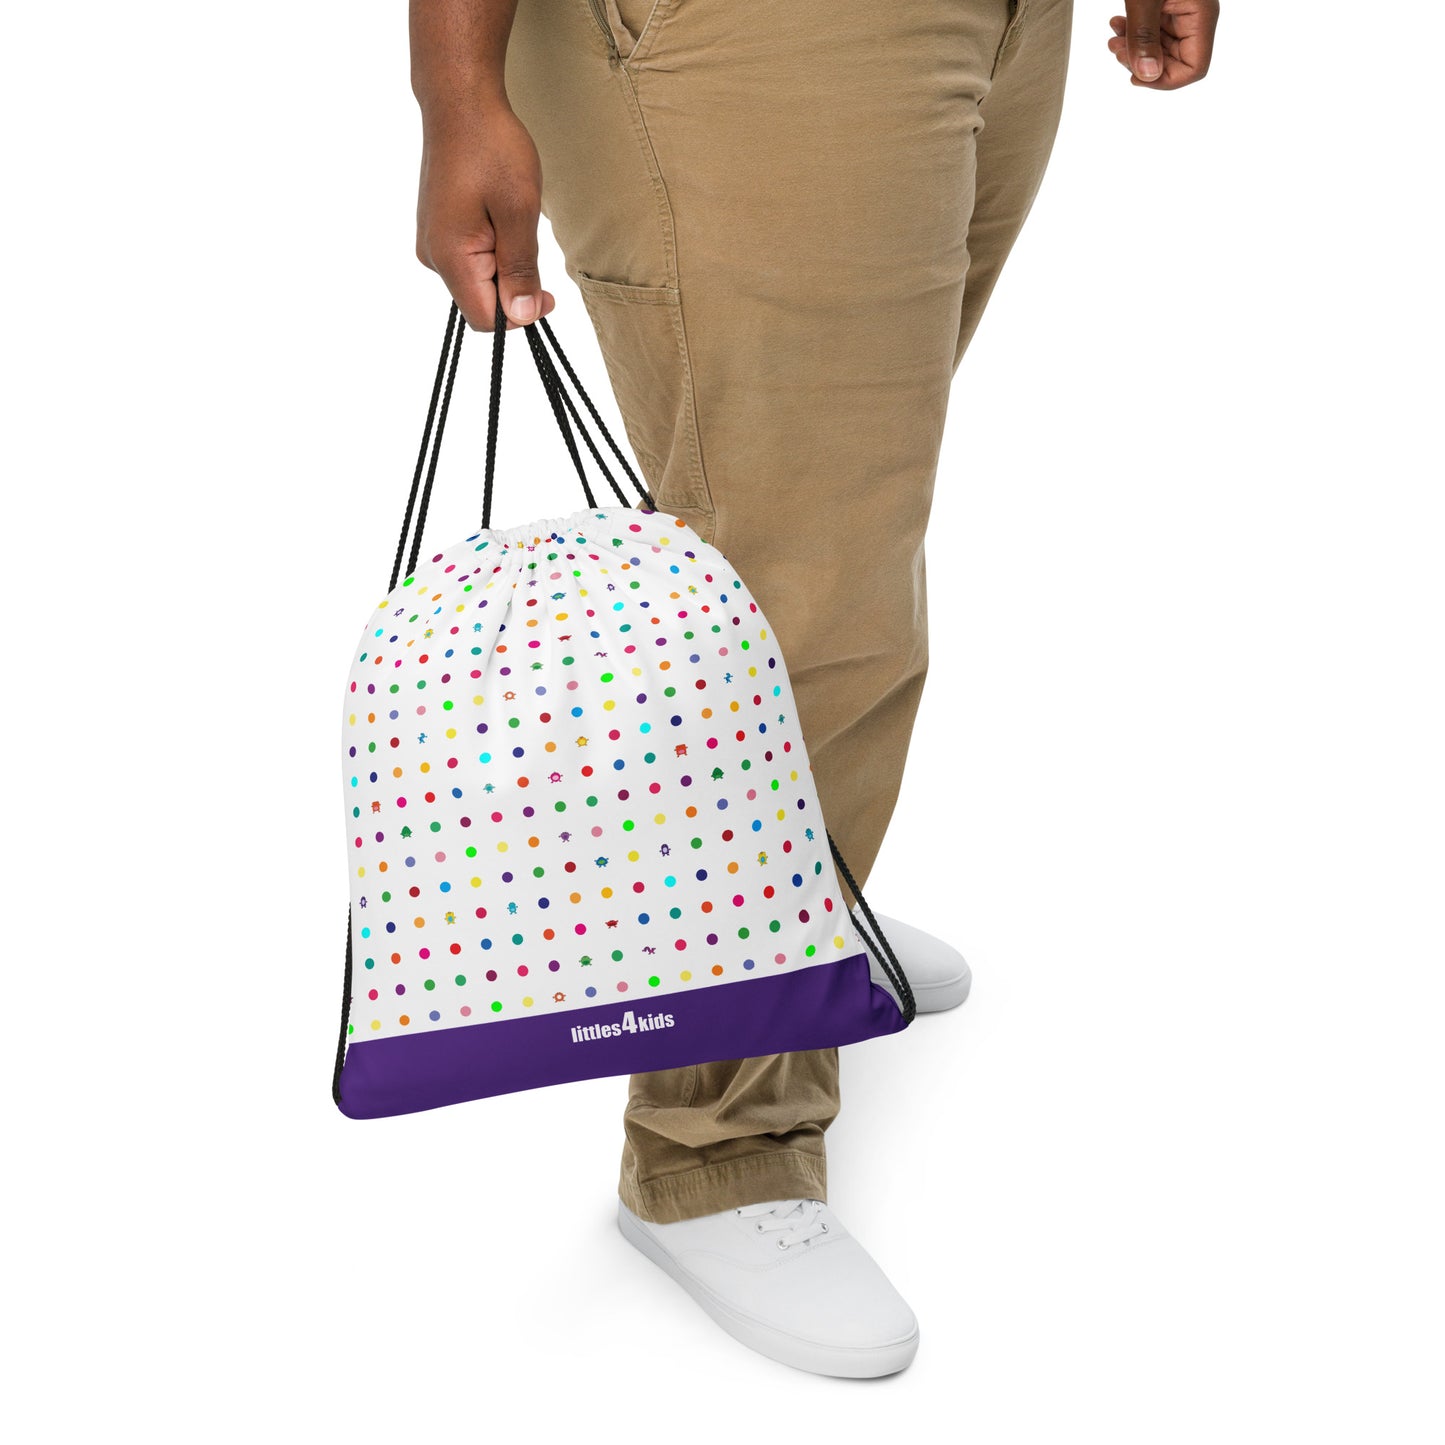 White Small Dot Monster drawstring bag purple bottom man carrying